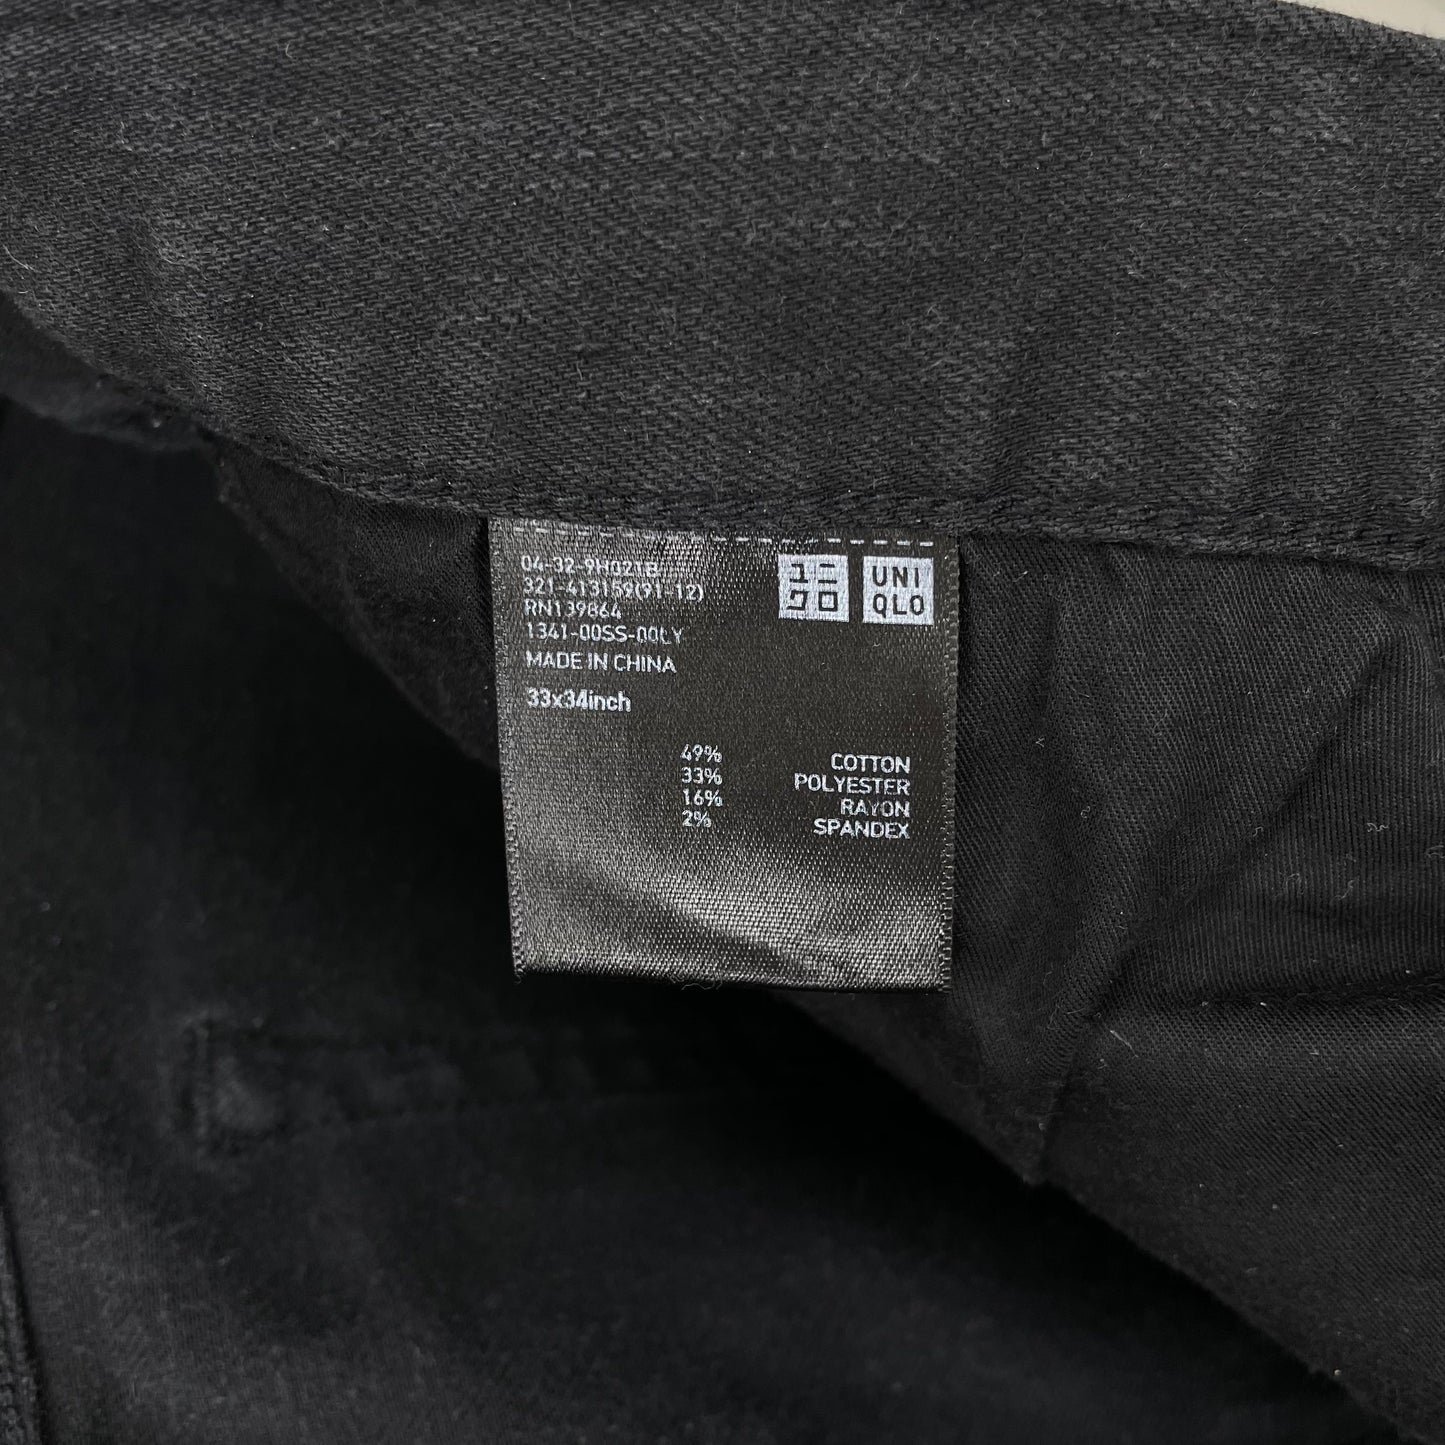 Pantalón jeans Uniqlo color negro Talla 33x34 Corte Slim Fit